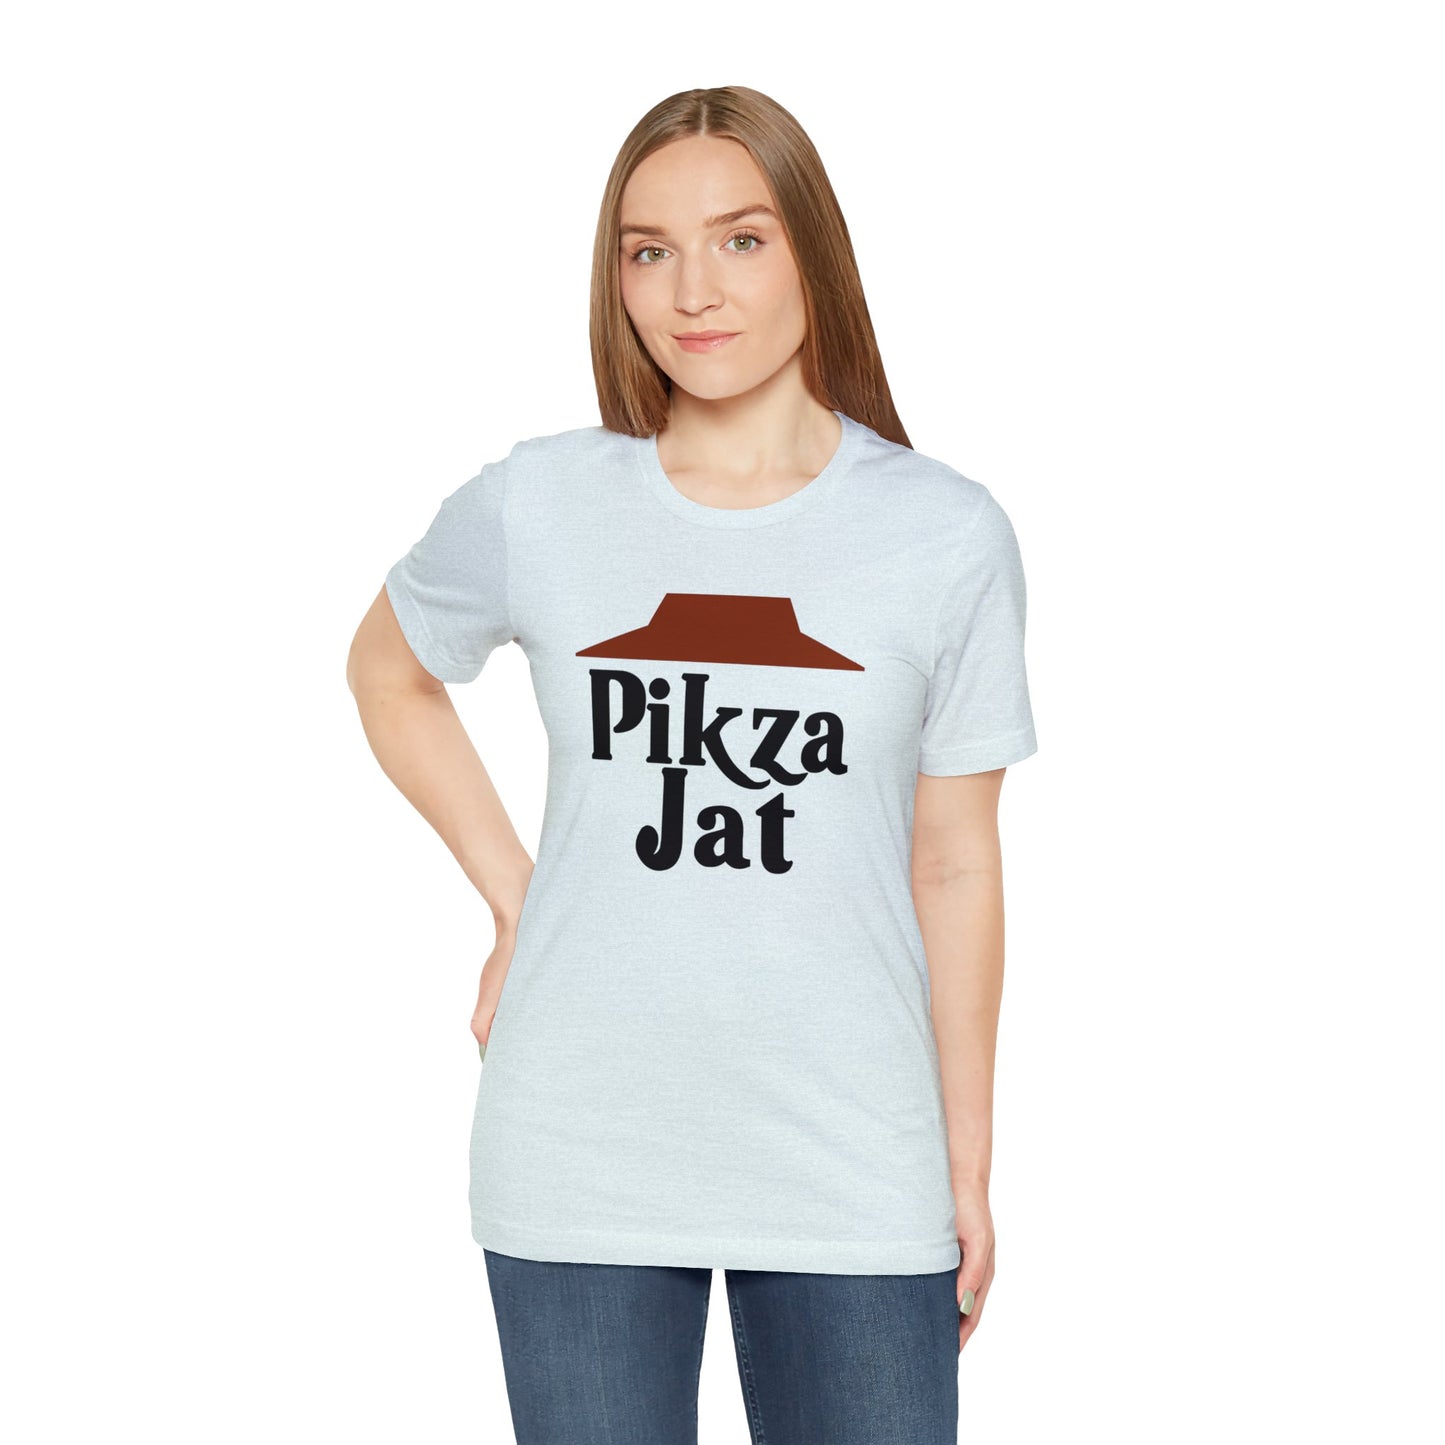 Pikza Jat T-Shirt - Hispanic Inspired Pizza Hut Parody